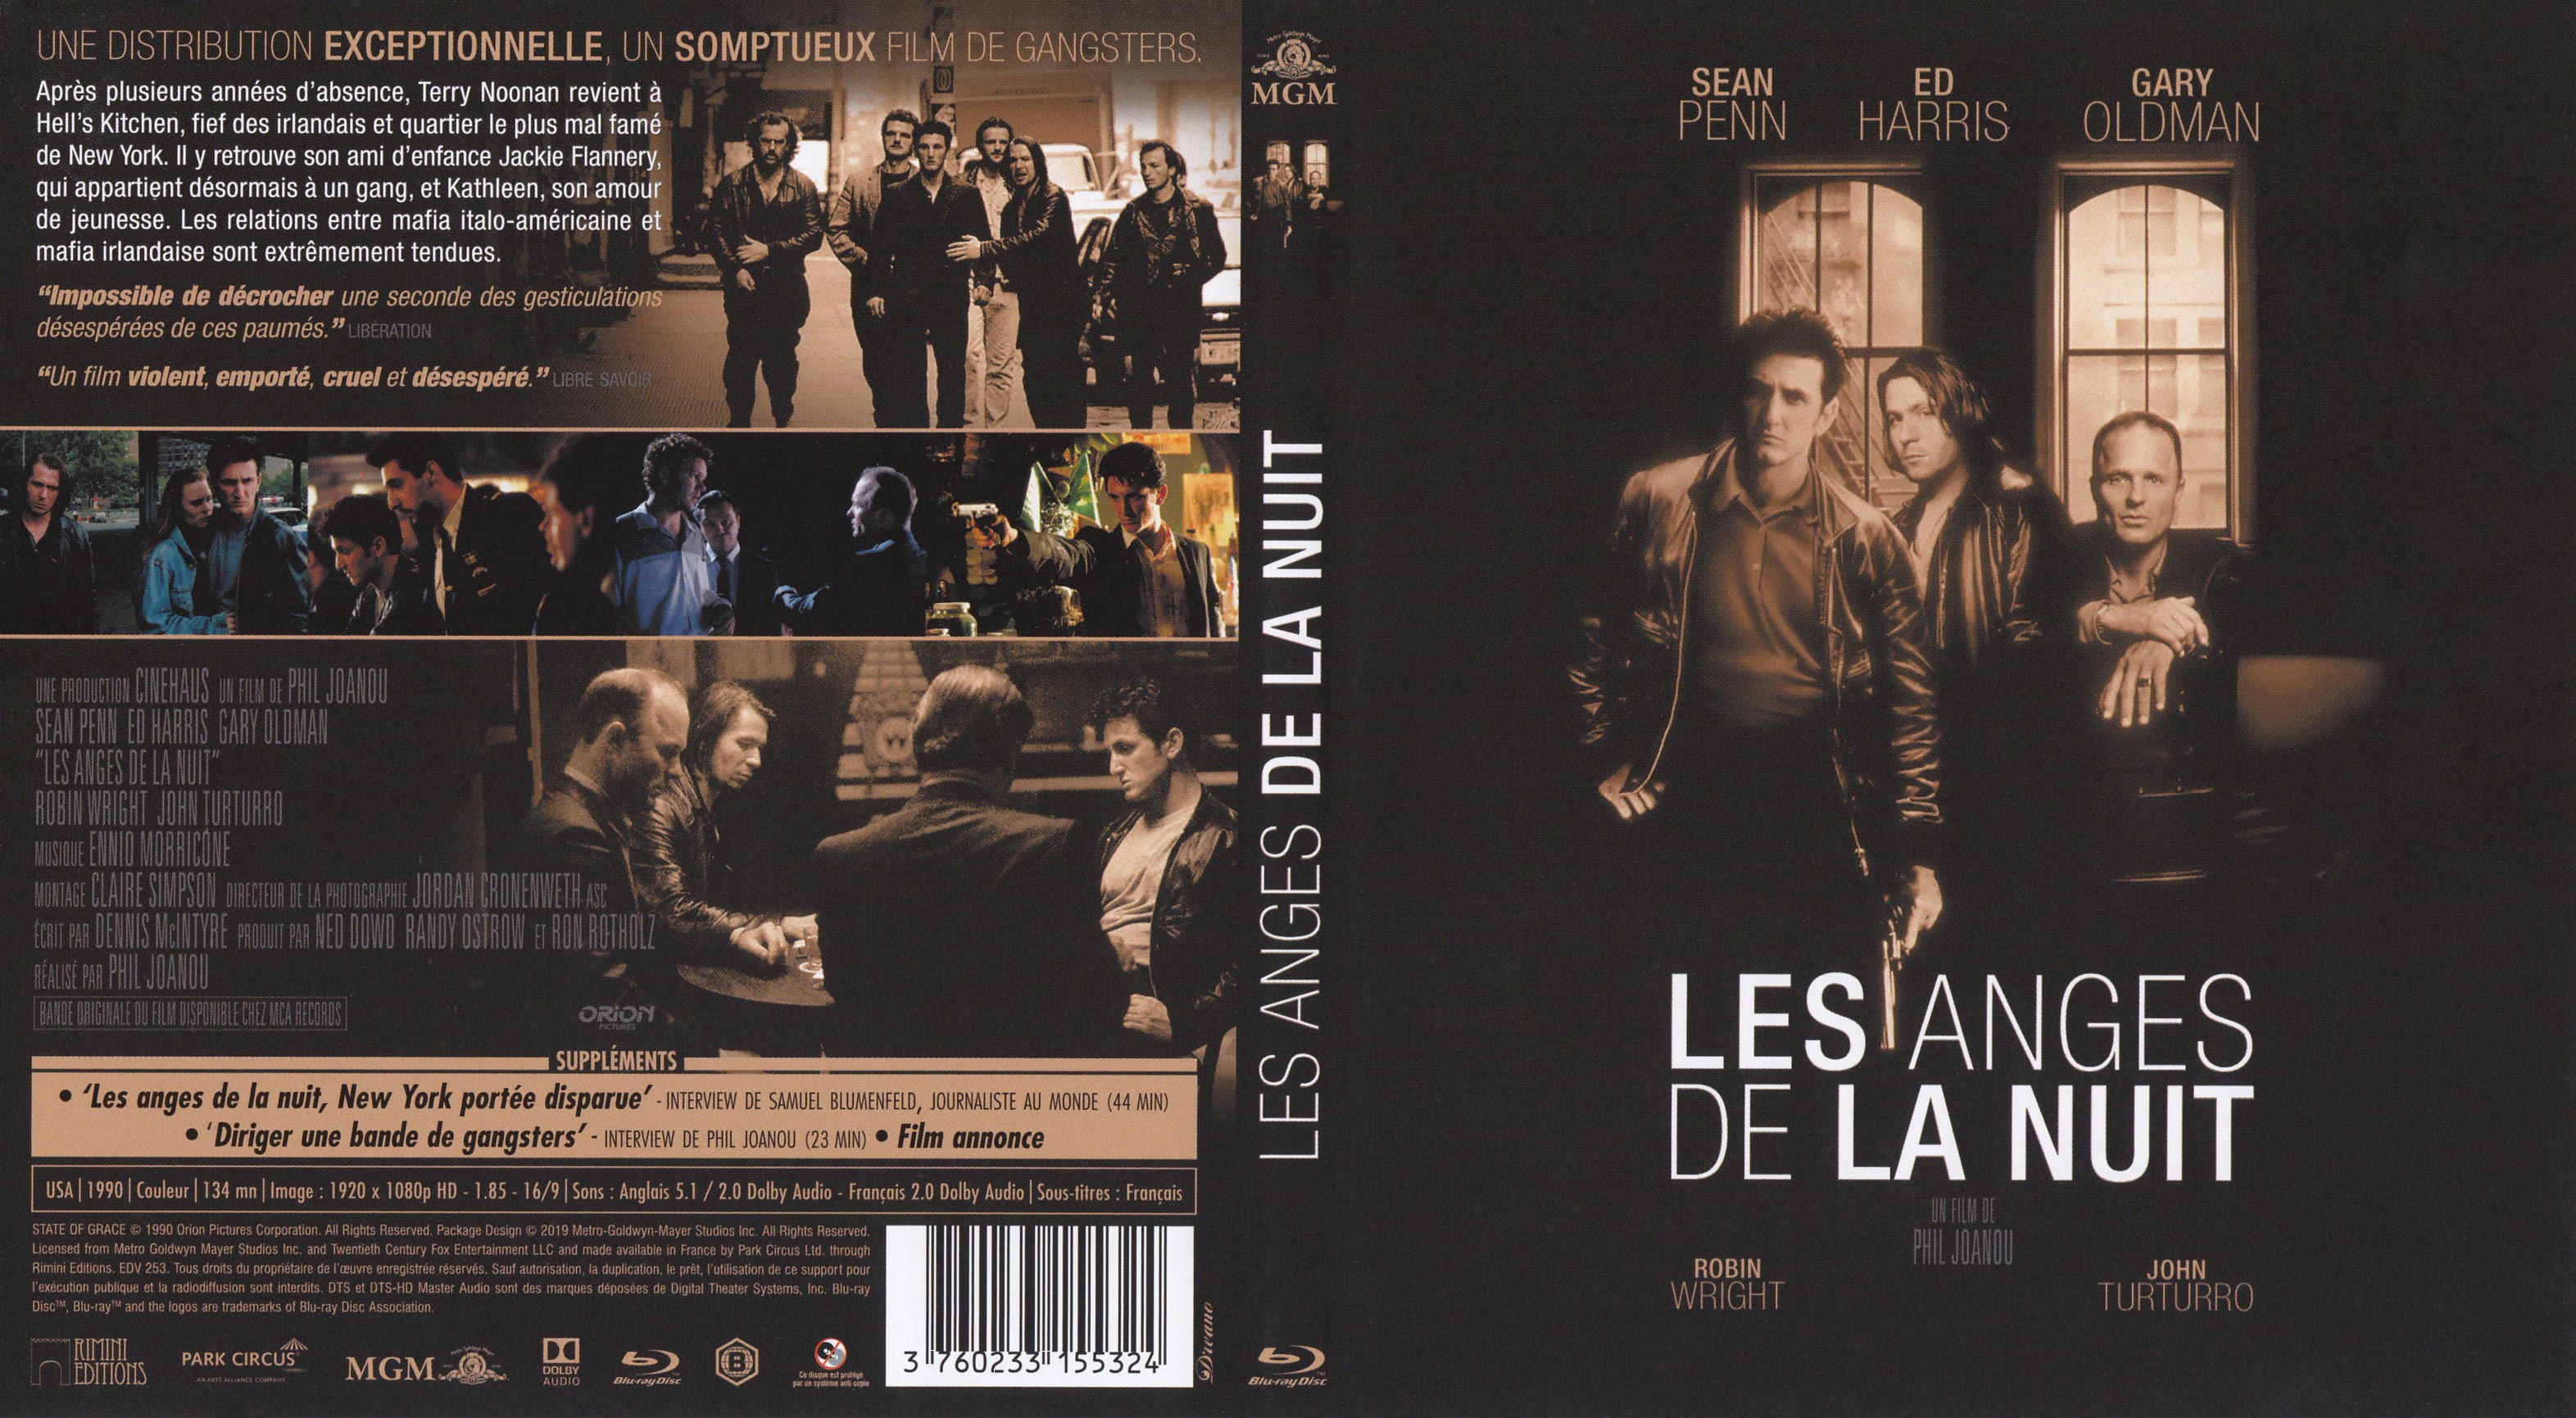 Jaquette DVD Les anges de la nuit (BLU-RAY)